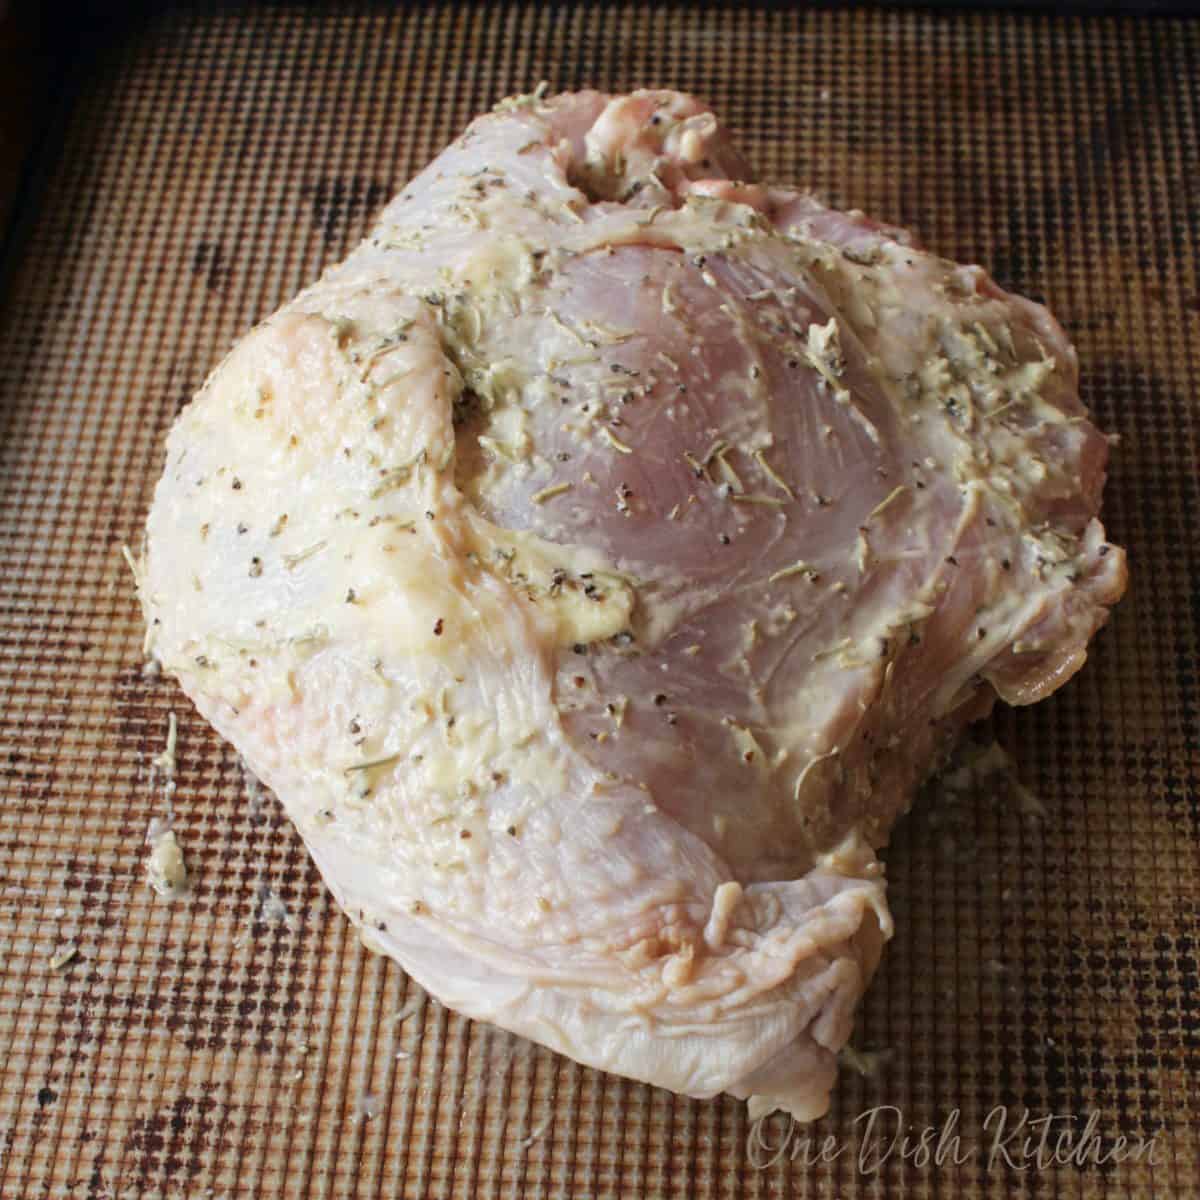 A raw turkey breast on a baking sheet 